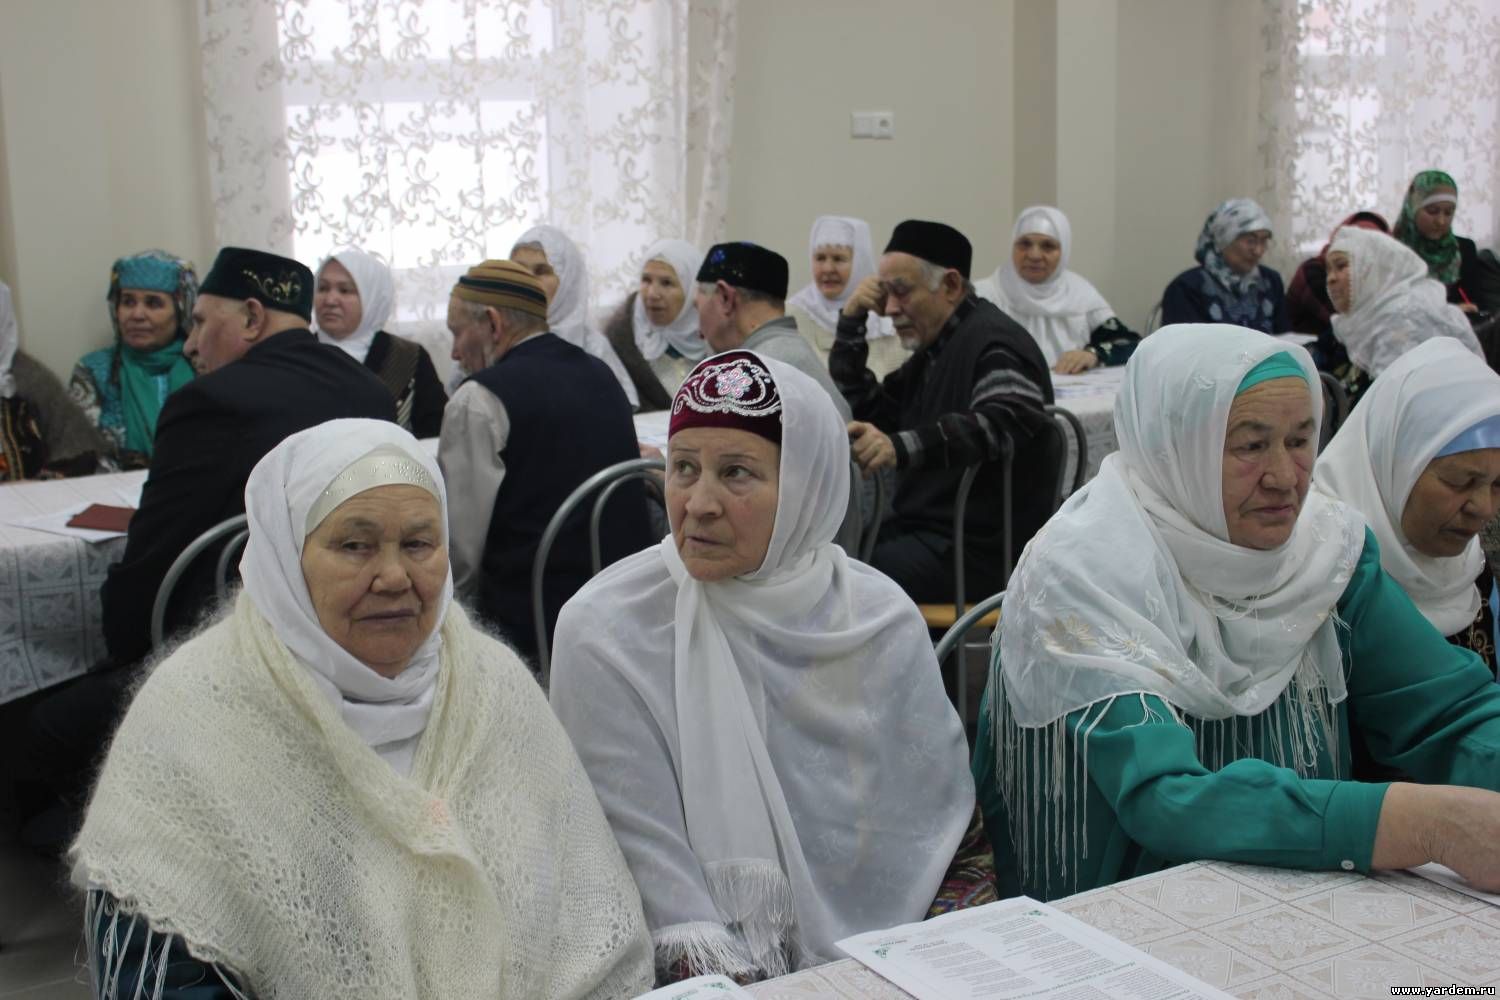 27 октября в мечети "Ярдэм" состоится юбилейное собрание "Муслимы". Общие новости